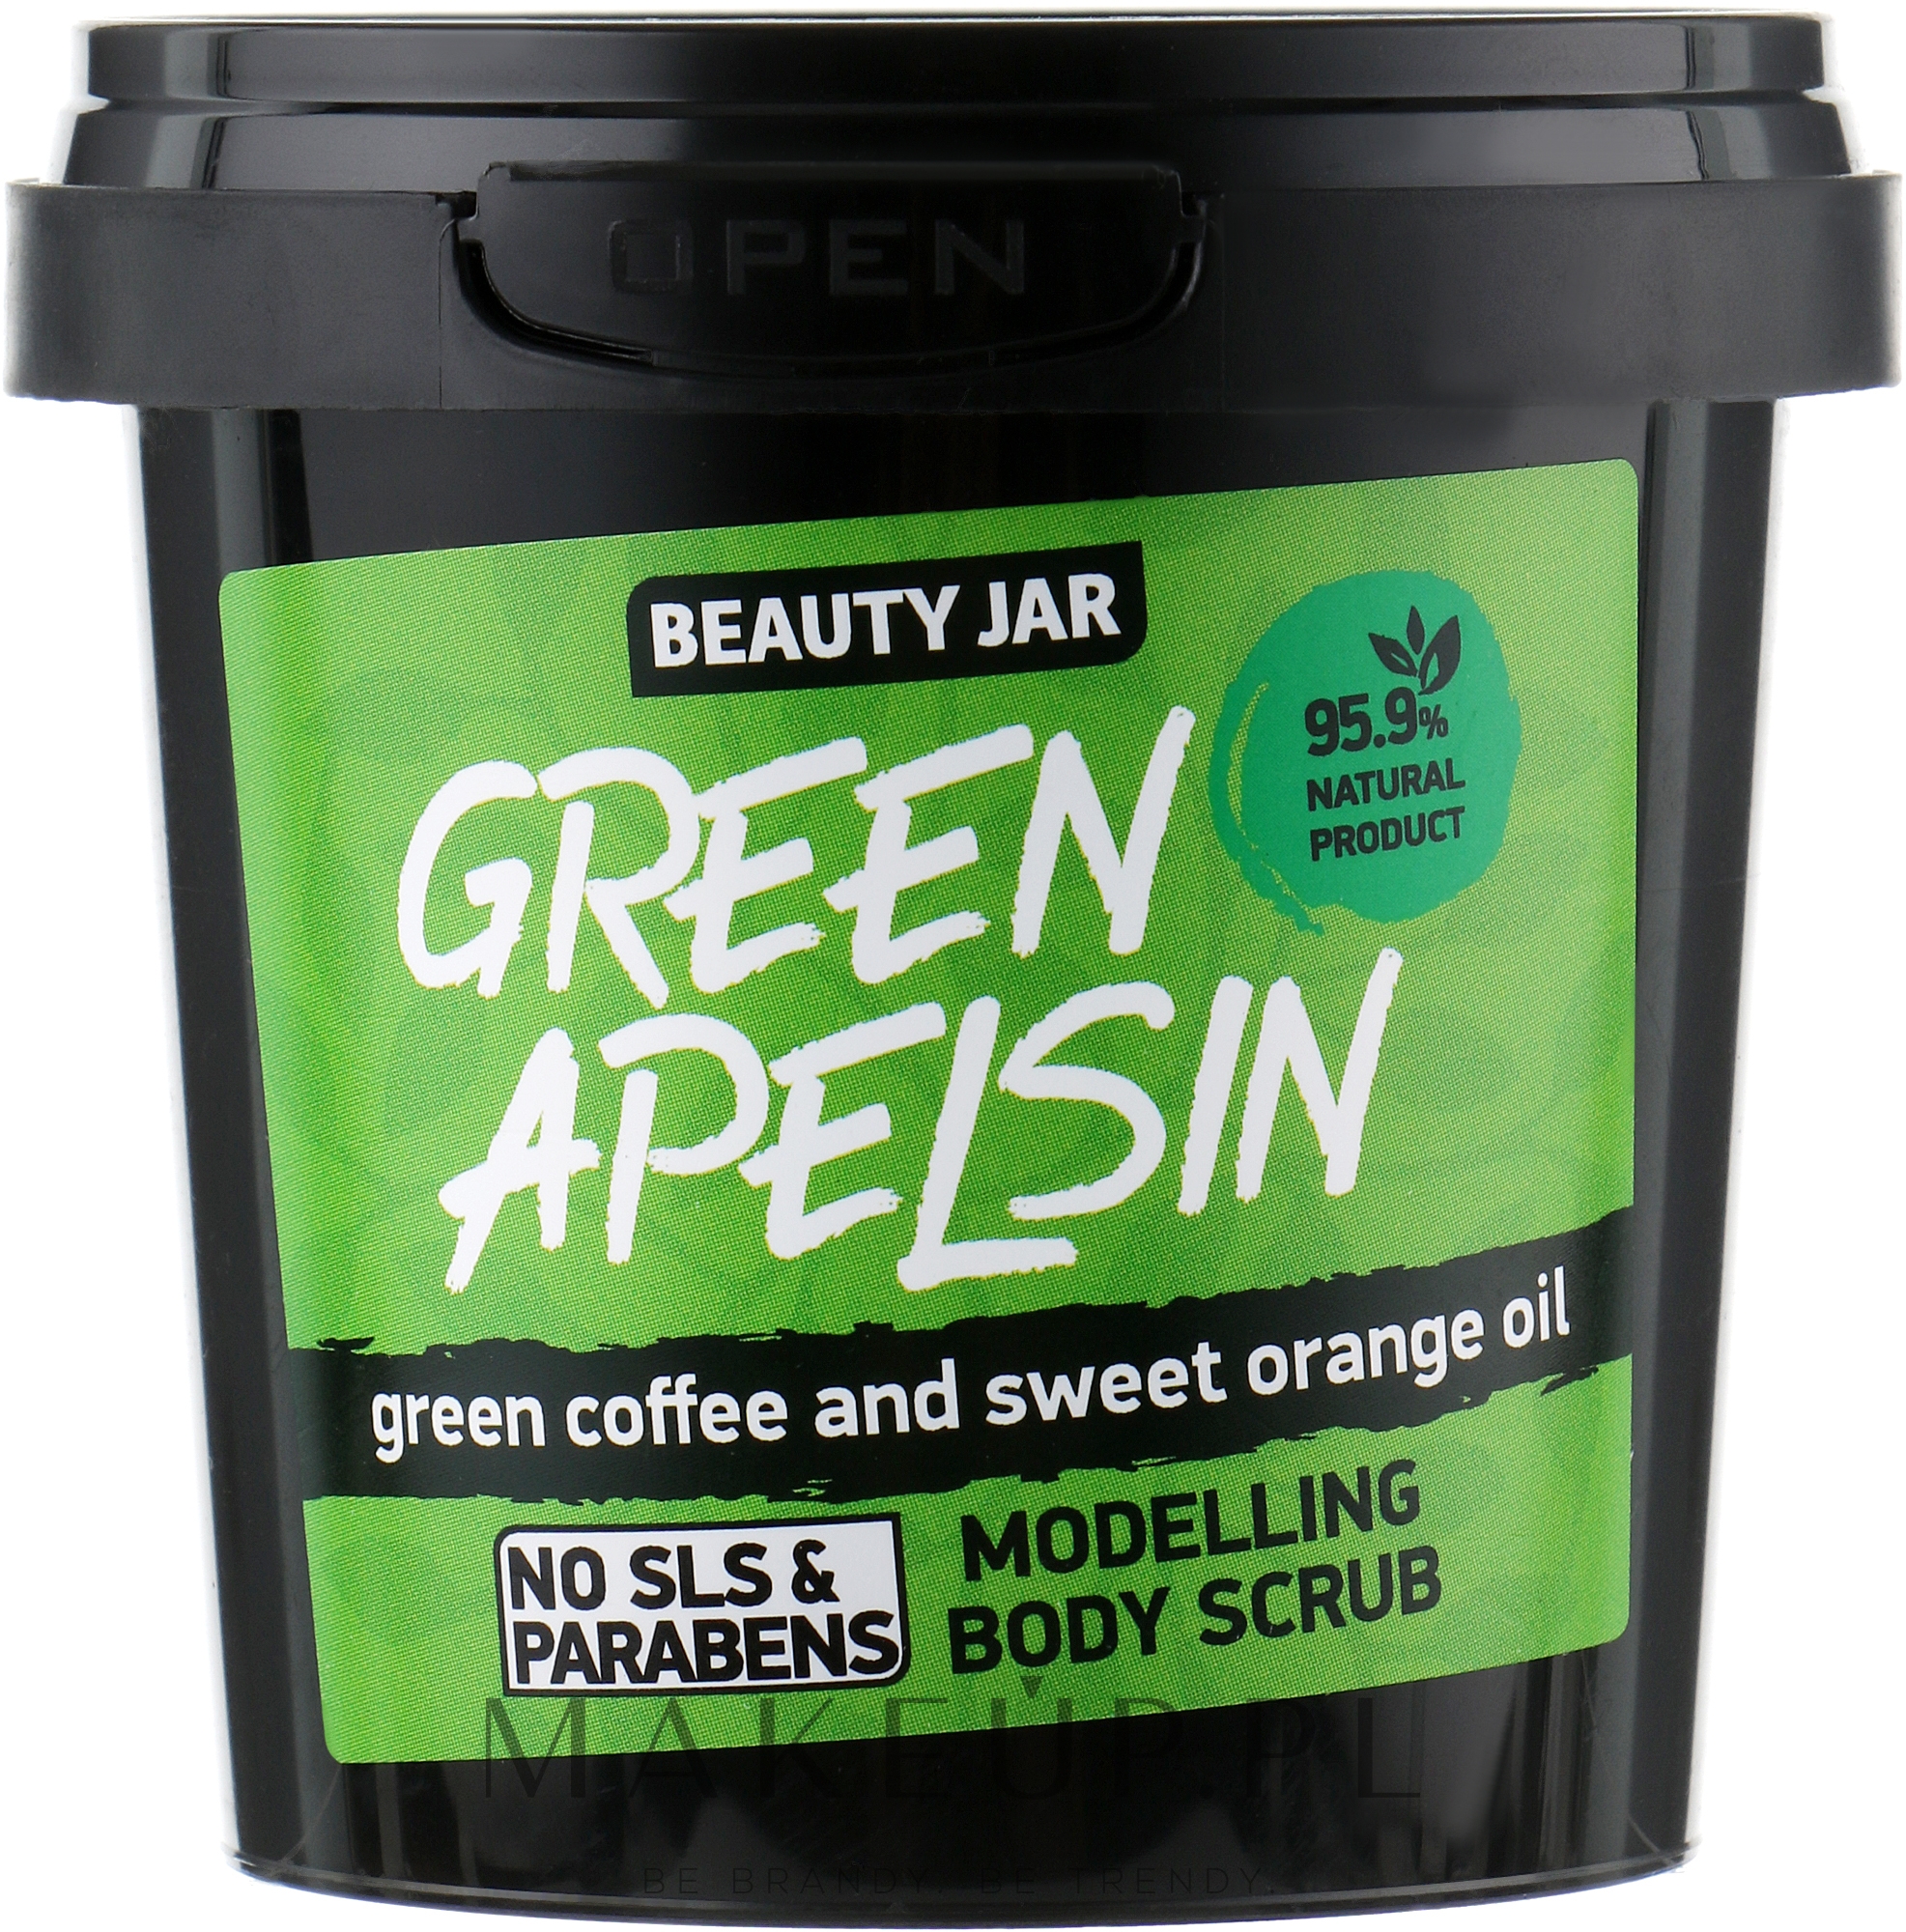 Modelujący scrub do ciała z zieloną kawą i słodką pomarańczą - Beauty Jar Green Apelsin Modelling Body Scrub — Zdjęcie 200 g